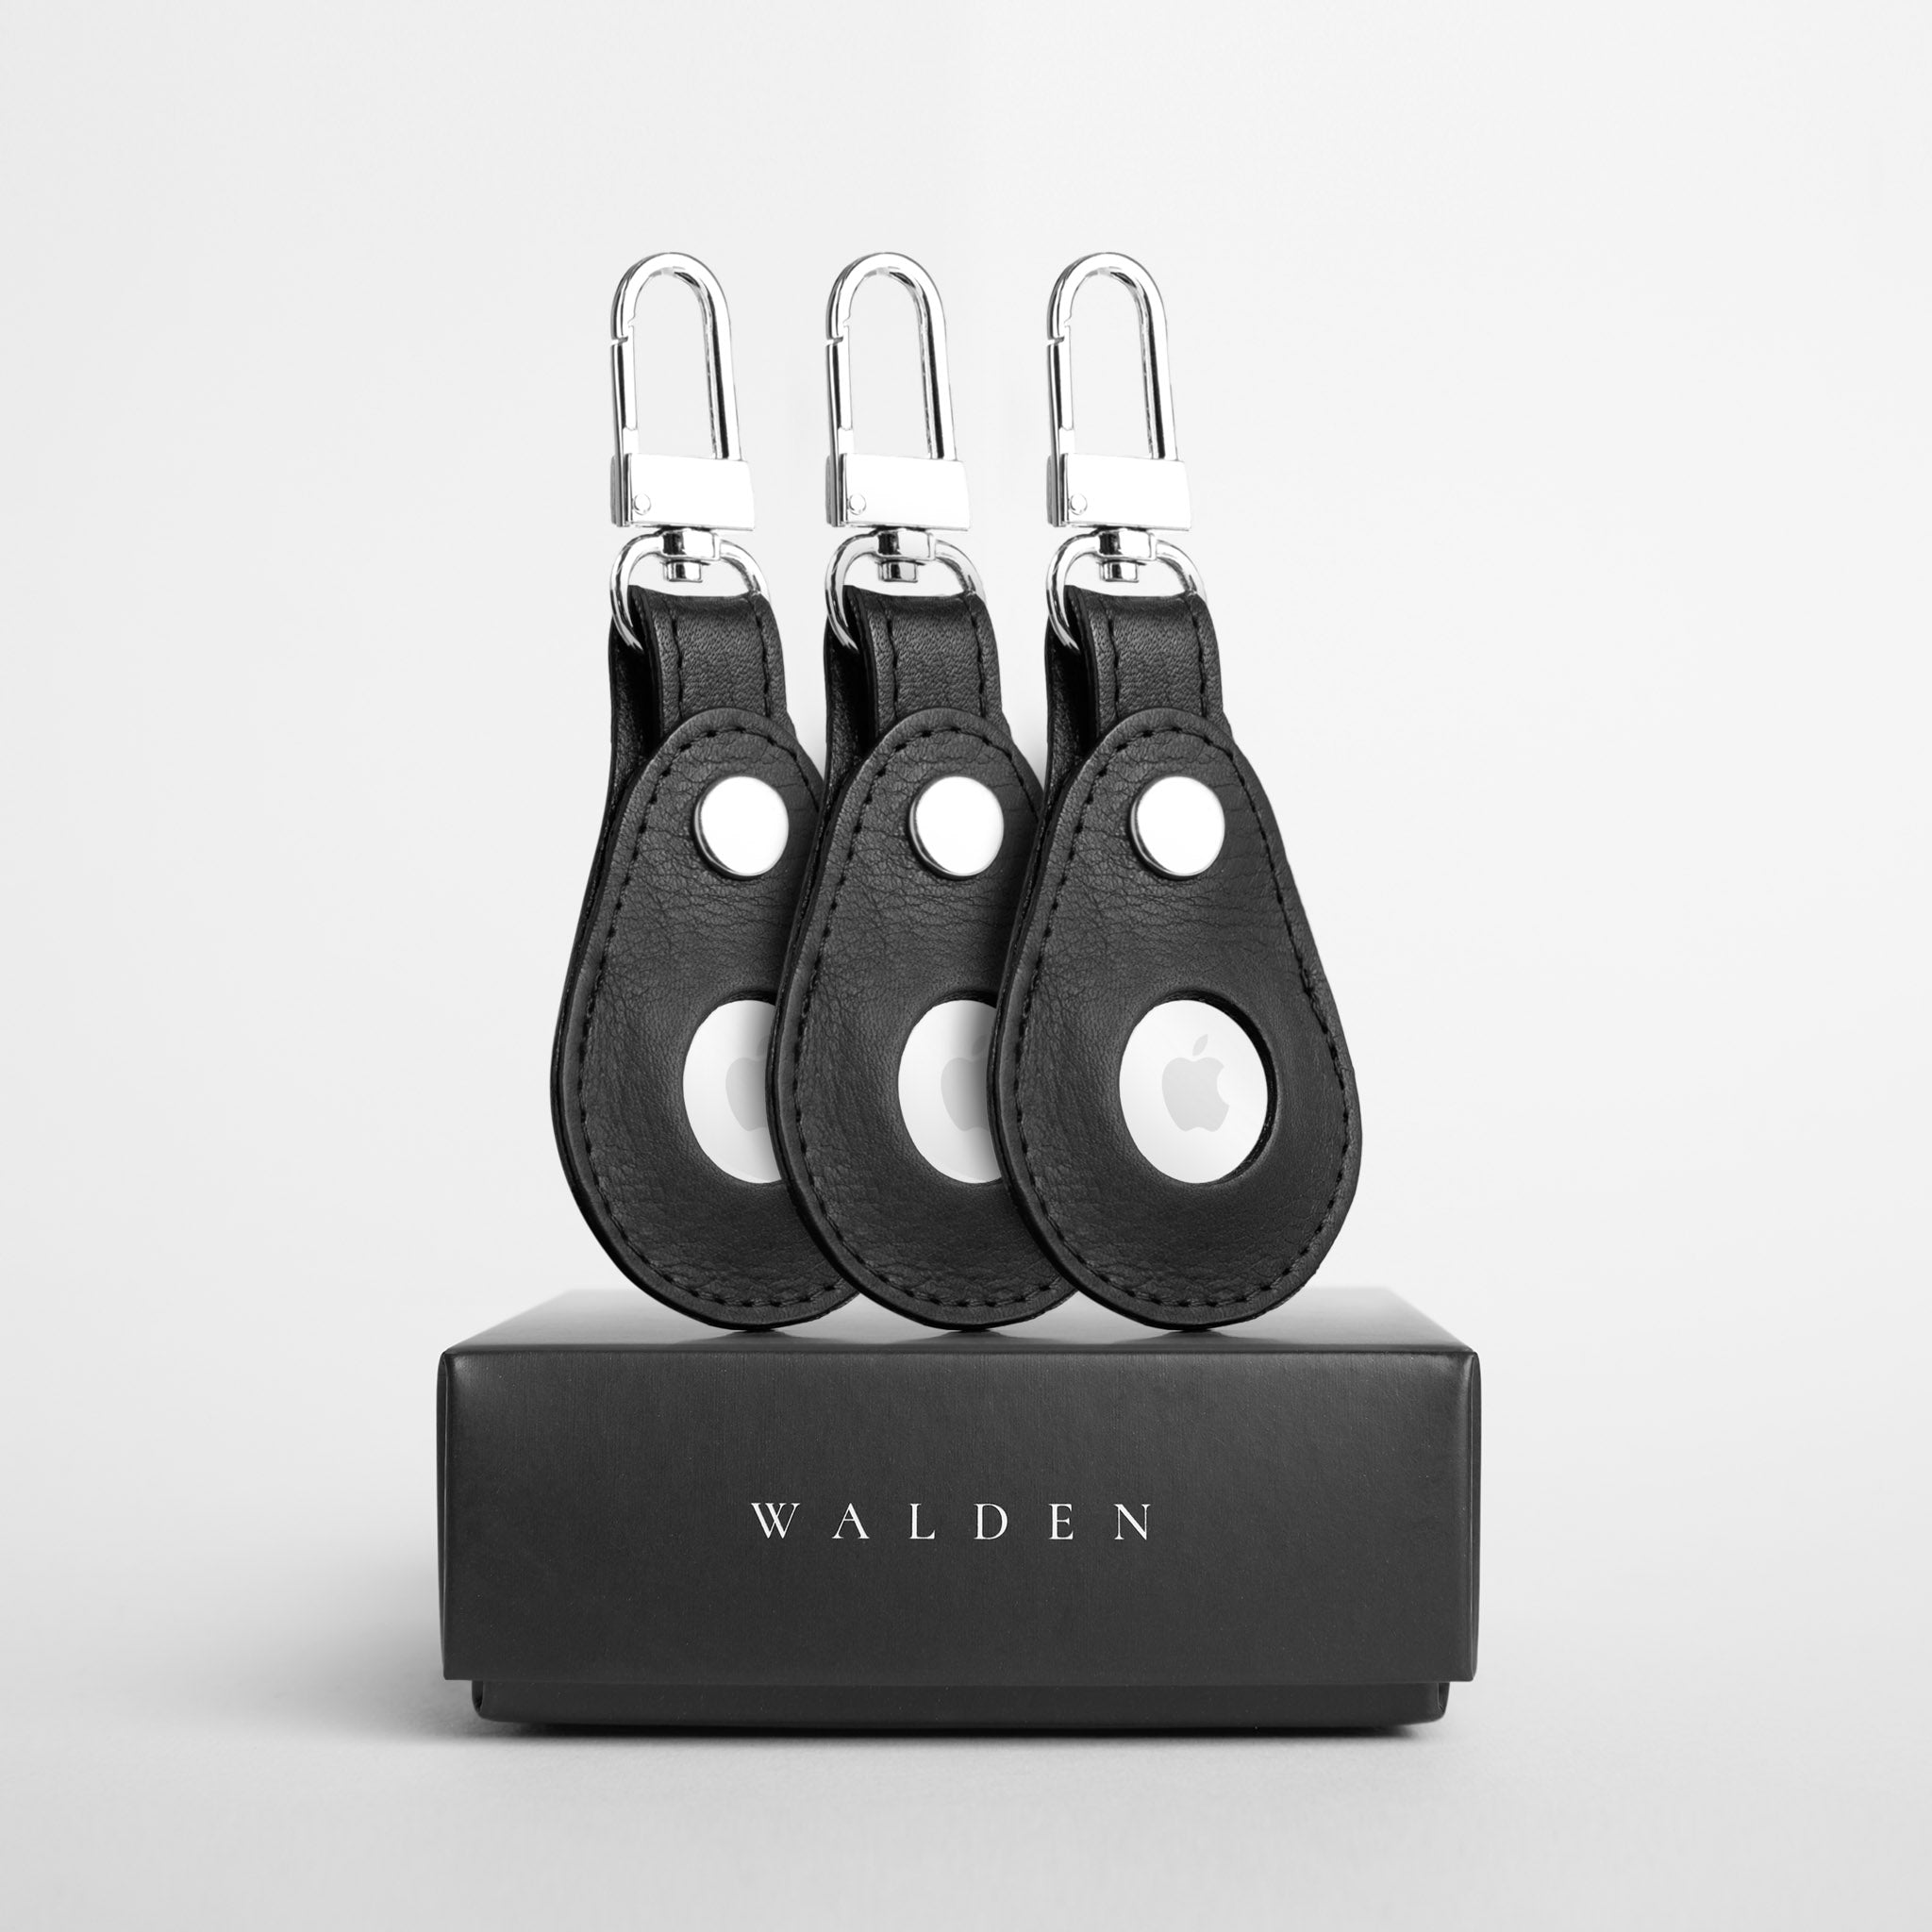 Walden® Kit Llavero Airtag x3 Unidades Color Bosco.